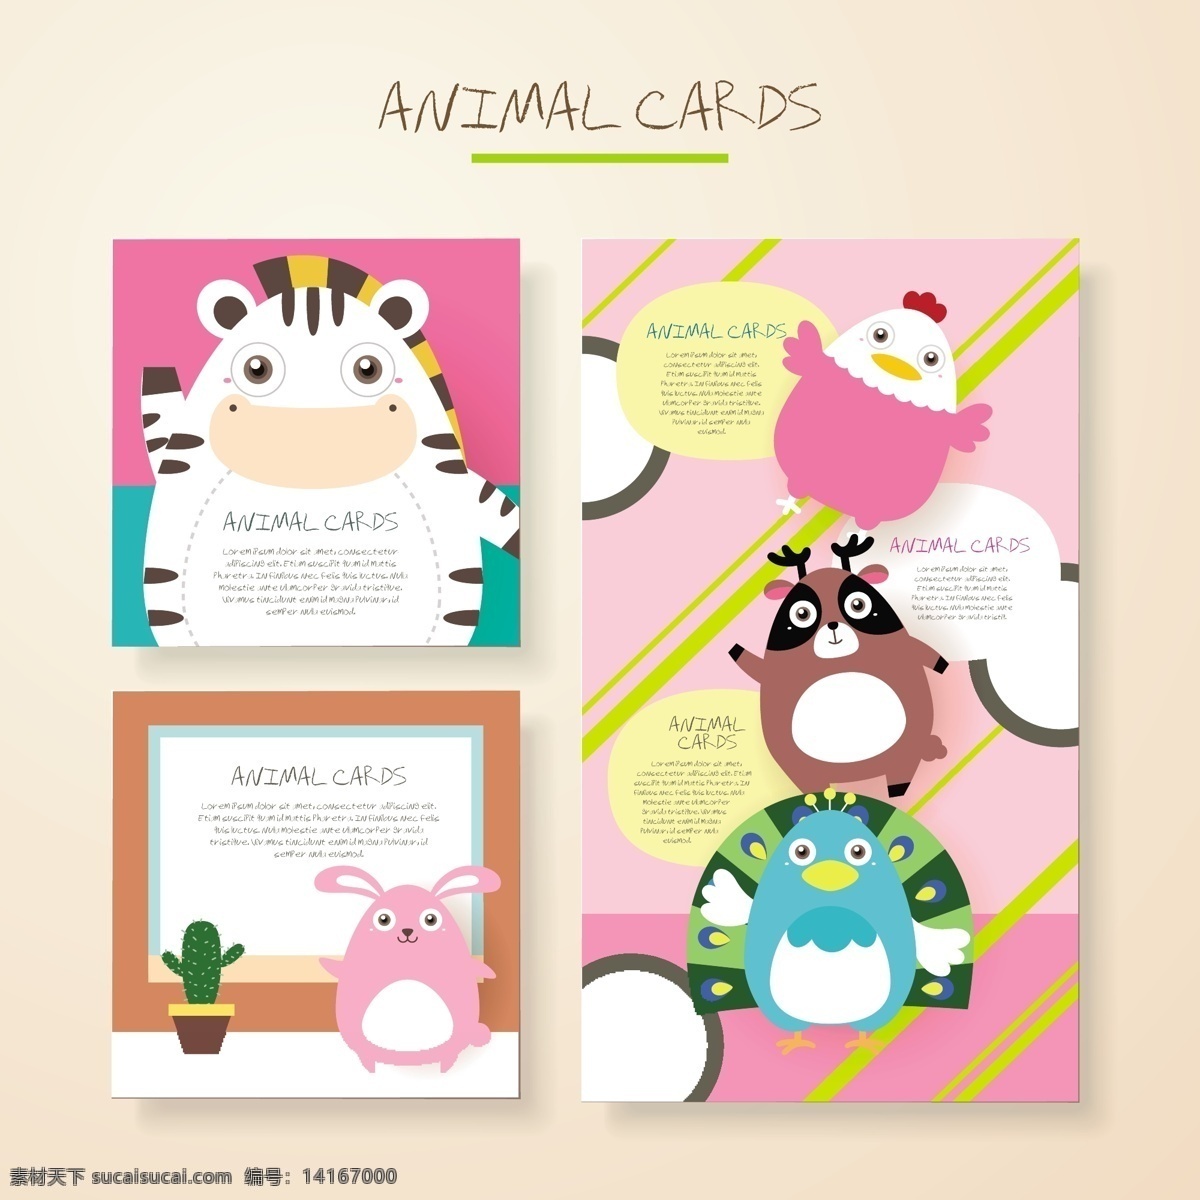 奶牛 可爱 卡通 动物 卡片 矢量 粉色 兔子 填充背景 手绘 矢量素材 平面设计素材